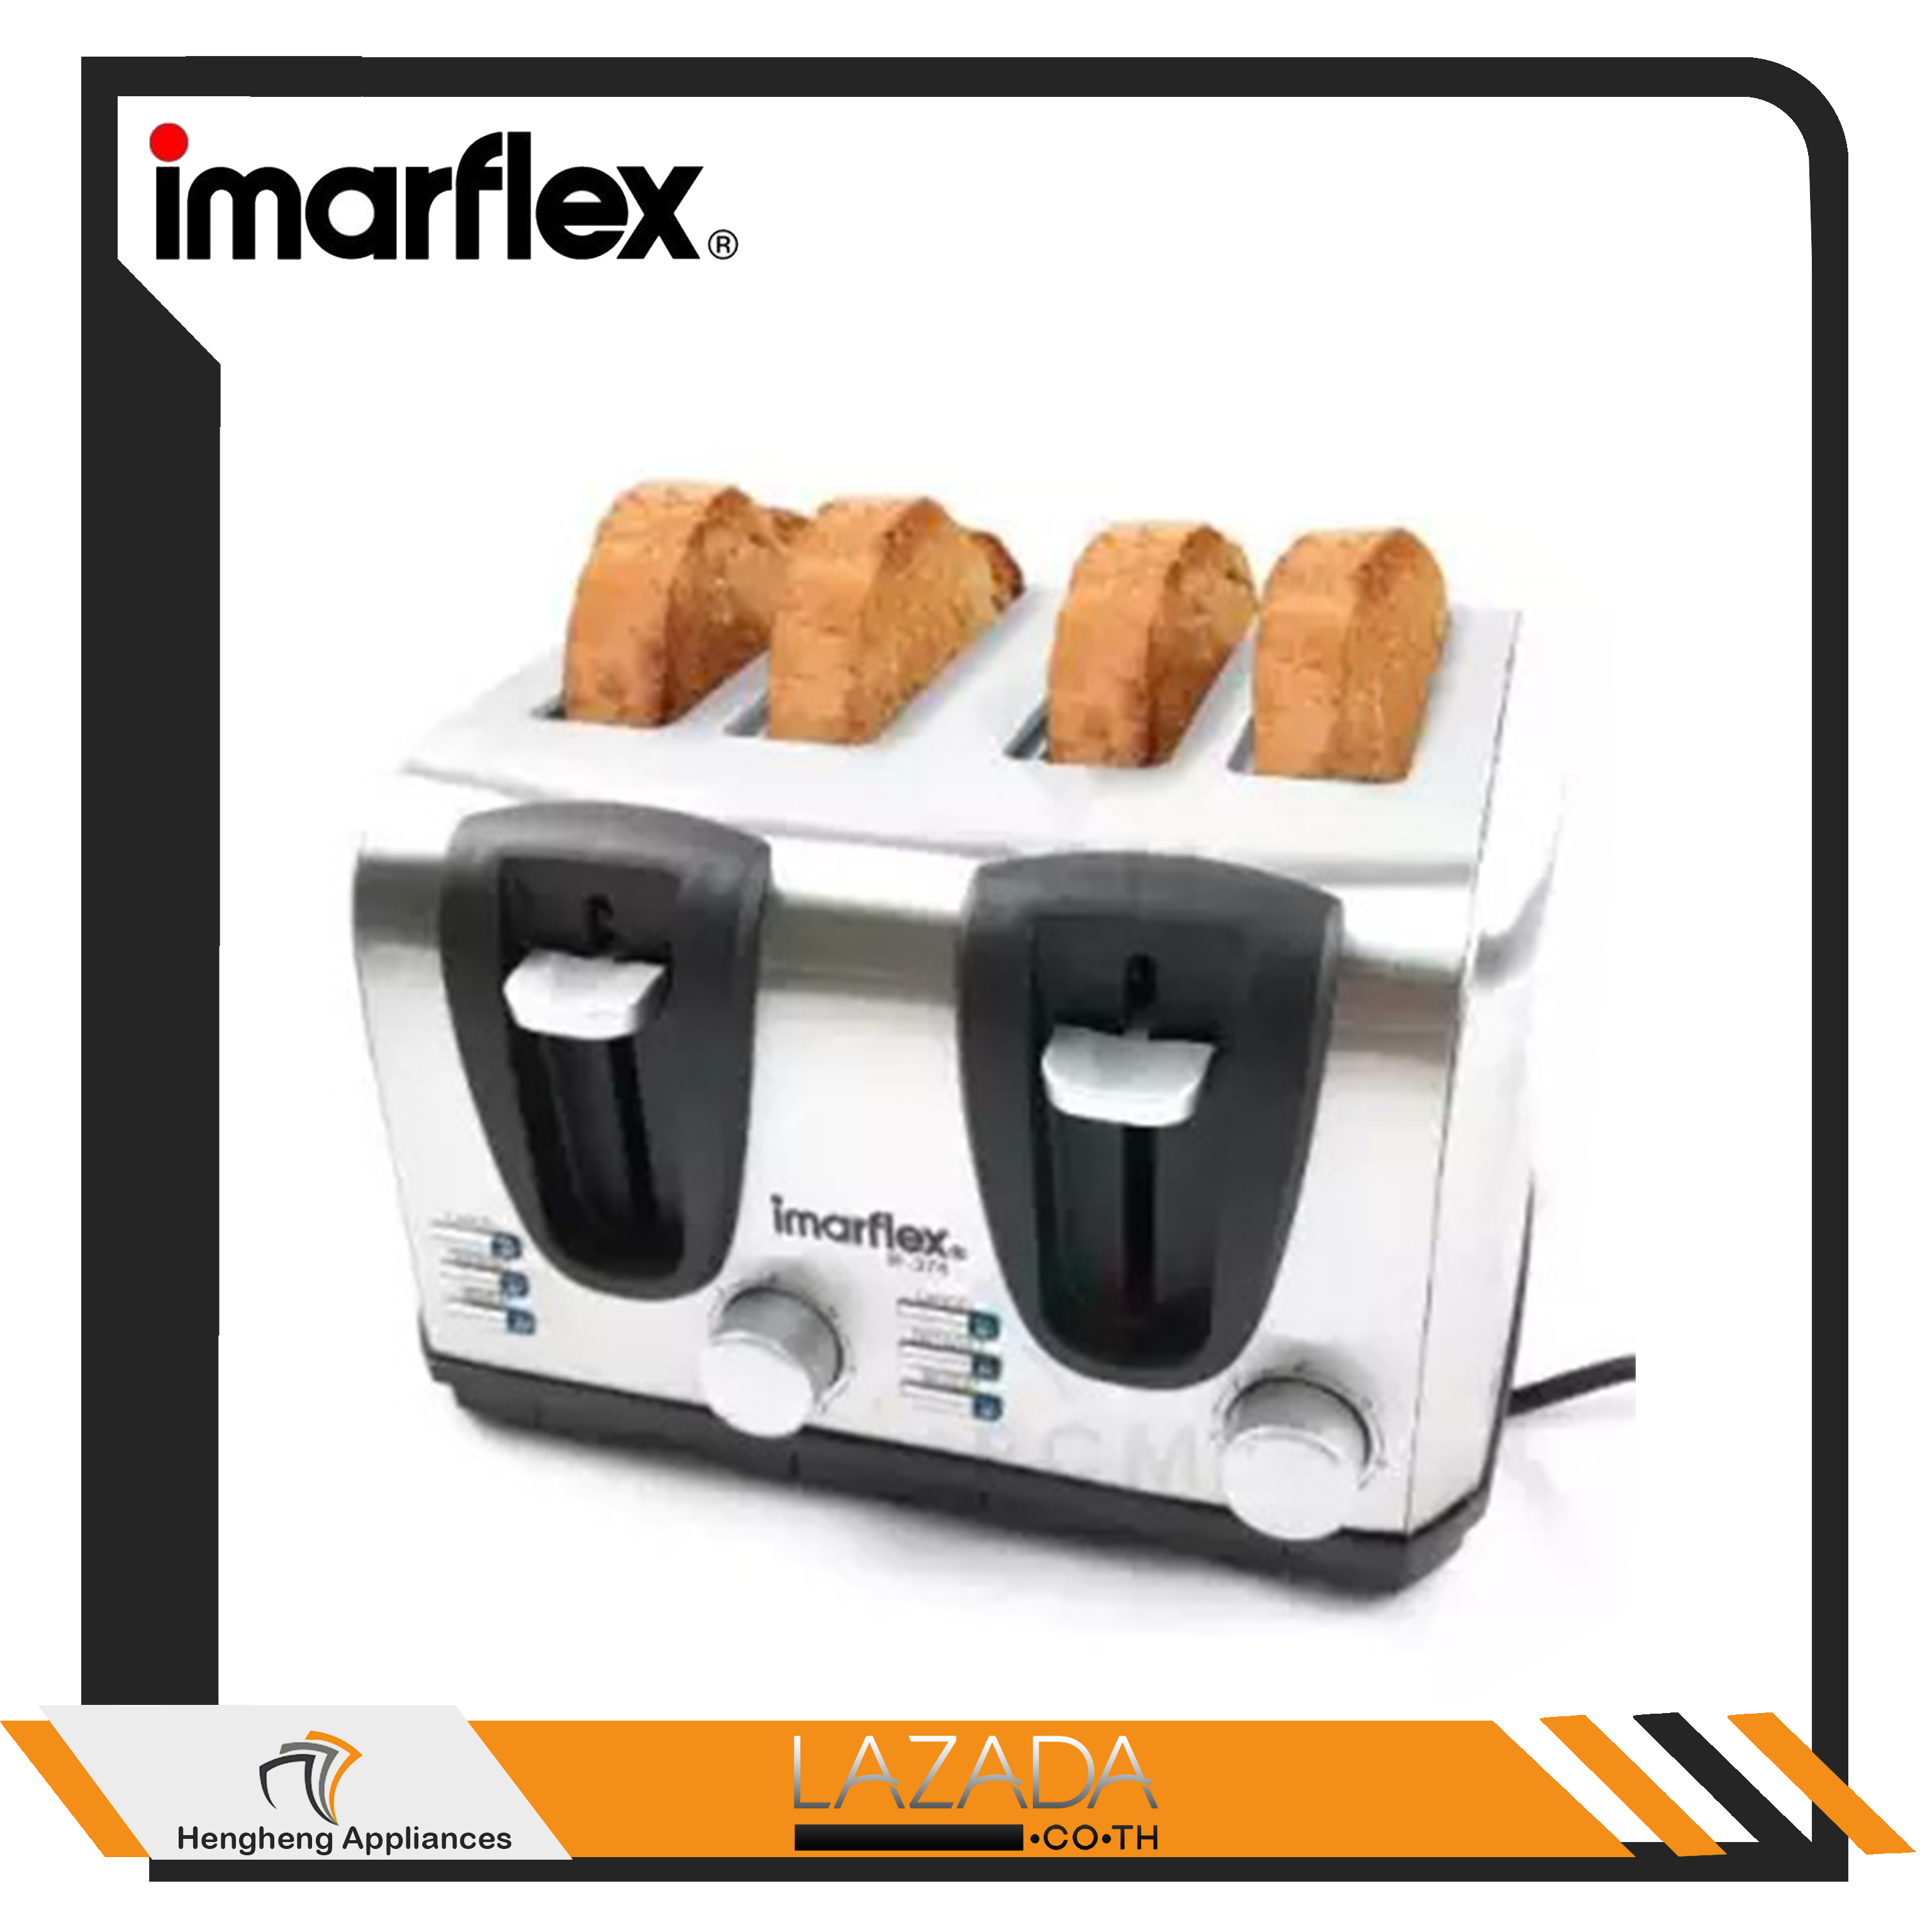 IMARFLEX(อิมาร์เฟล็กซ์) เครื่องปิ้งขนมปัง 4 แผ่น ความร้อน 6 ระดับ 1200 วัตต์ รุ่น IF-374